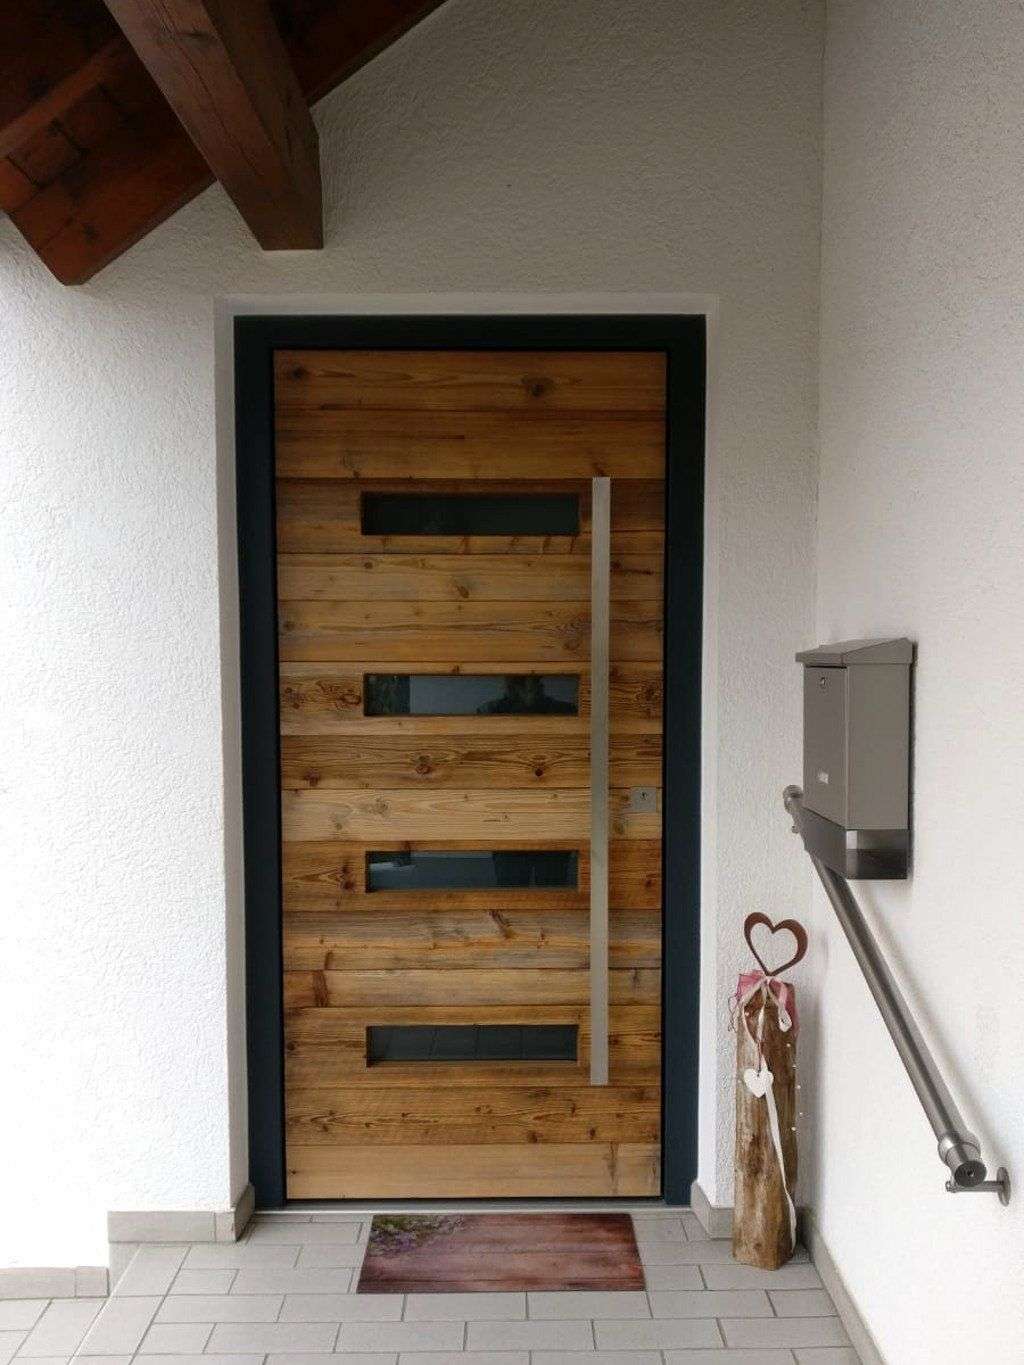 Haustürelement mit Türblatt in Eiche, Edelstahl Griffstange, Lichtausschnitten und Rahmen in anthrazitgrau (Biberach)